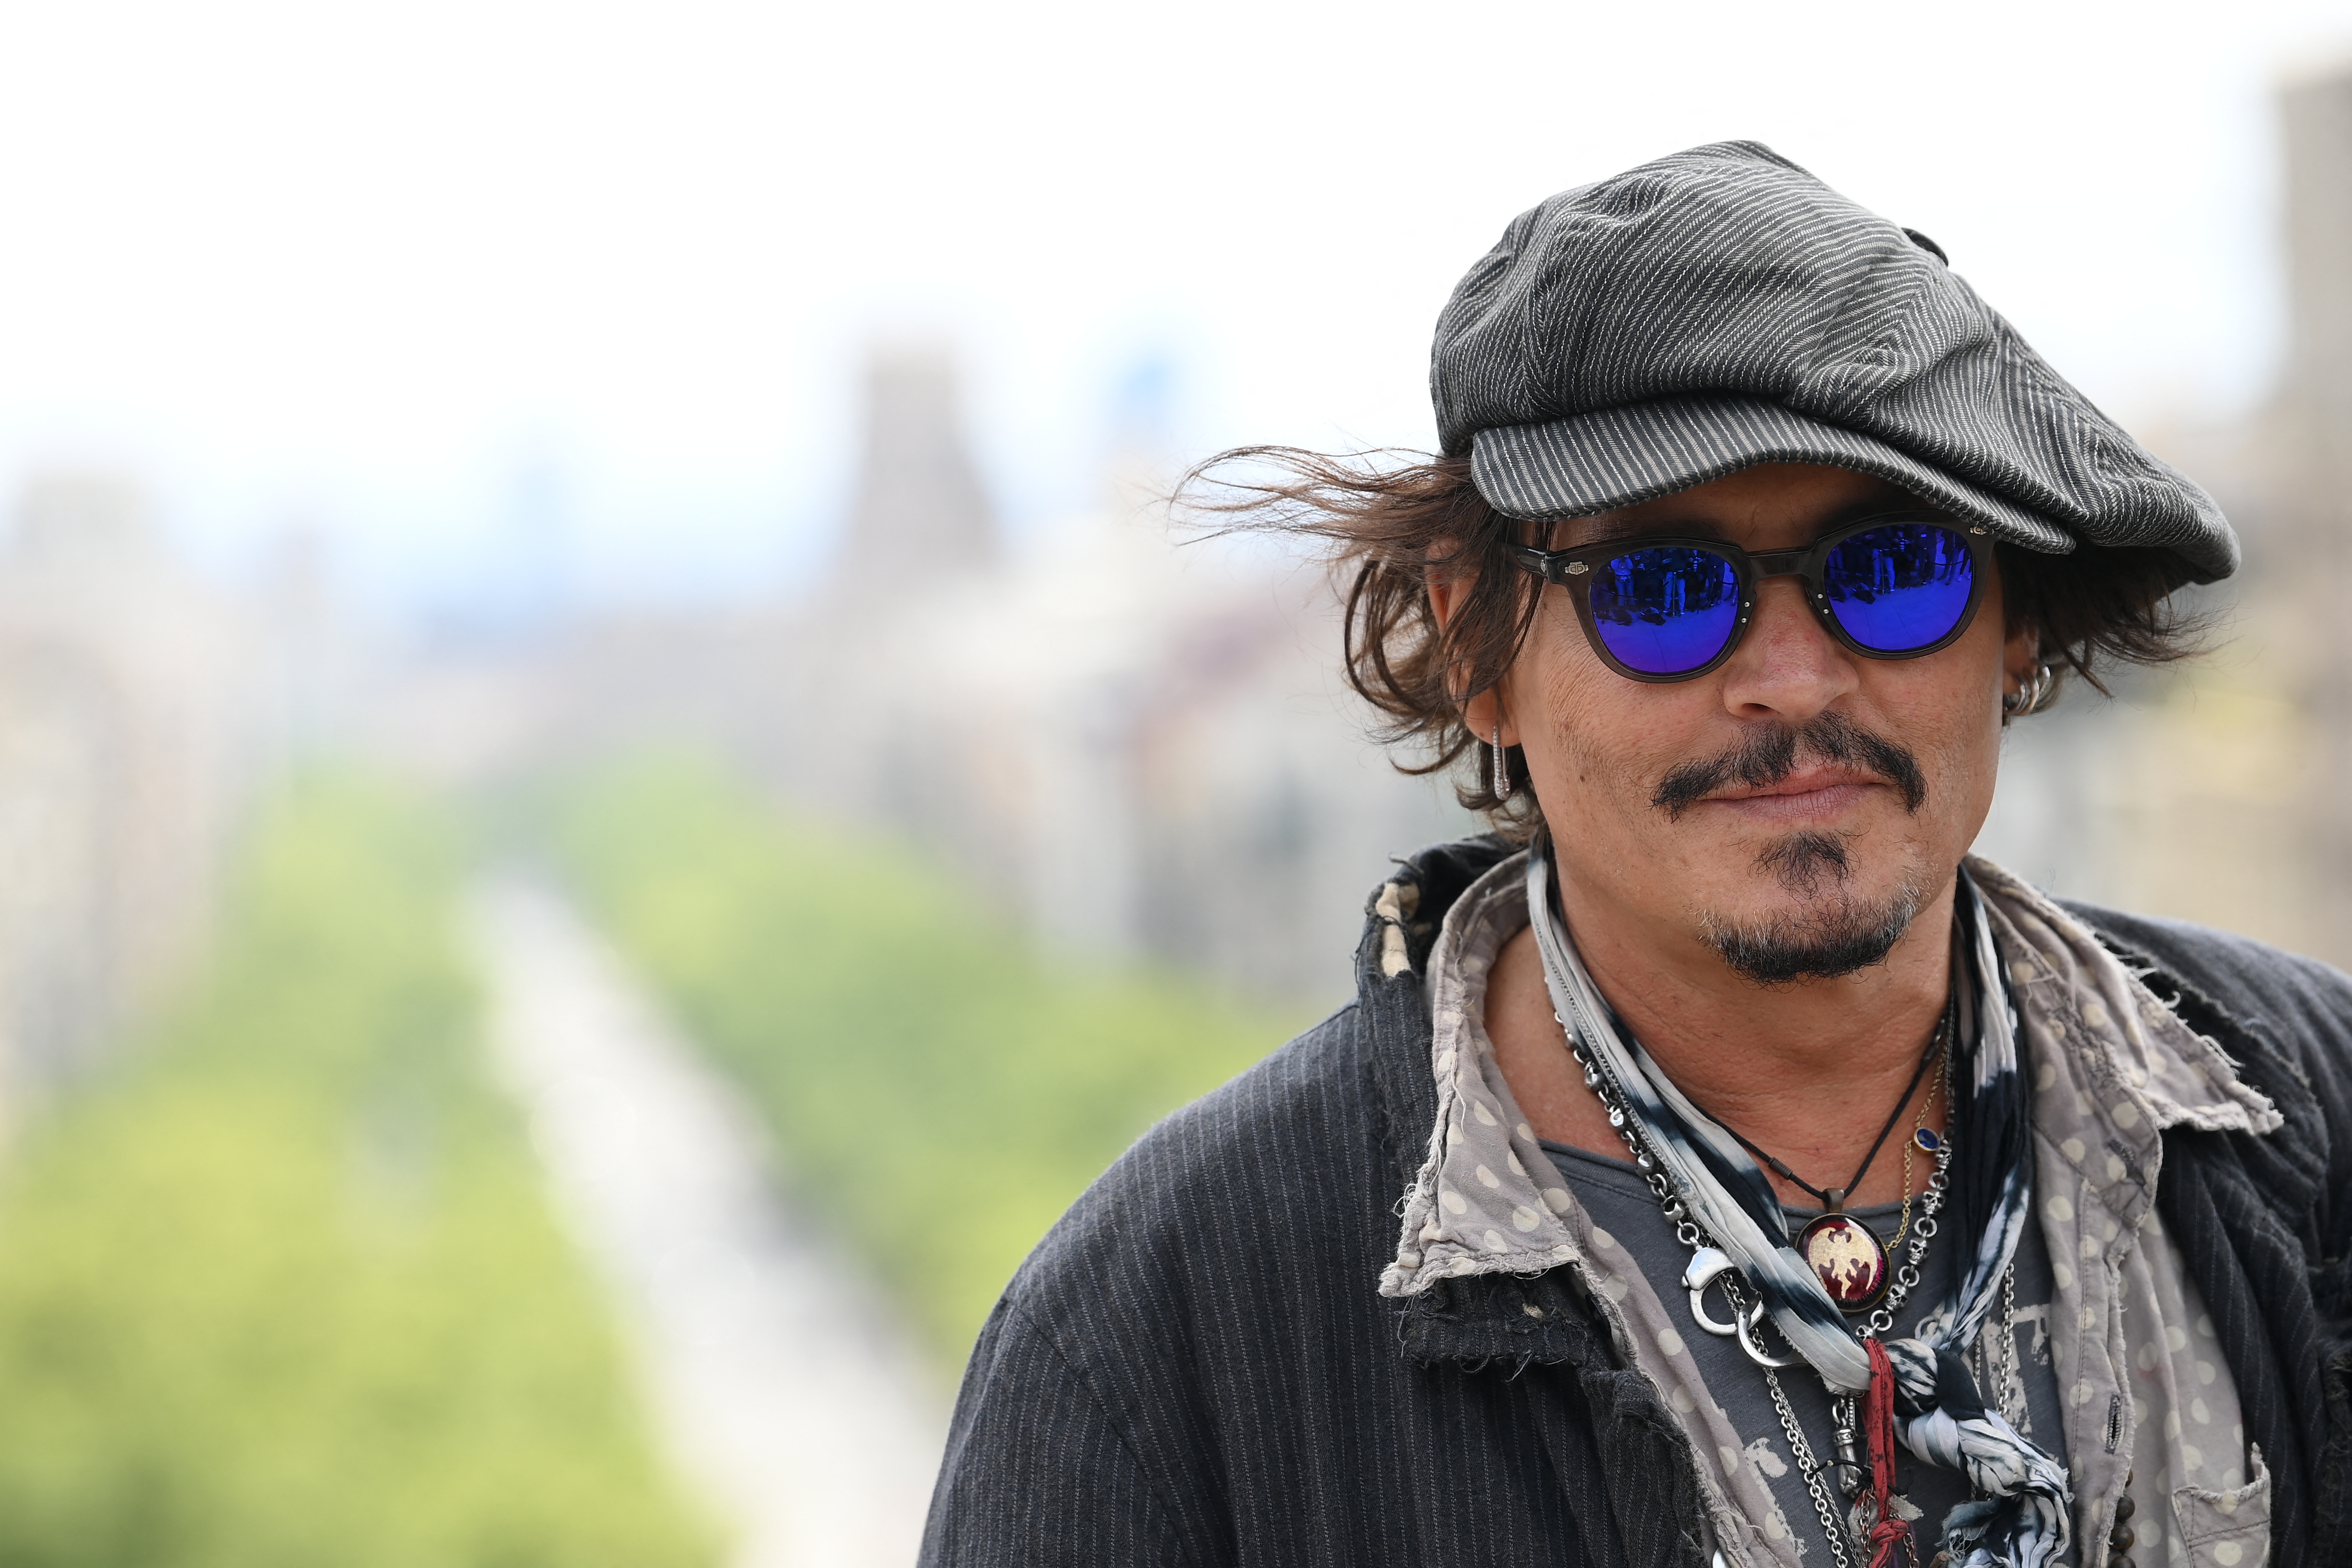 Egy nőket támogató szervezet szerint sértő, hogy Johnny Depp hamarosan két életműdíjat is kap